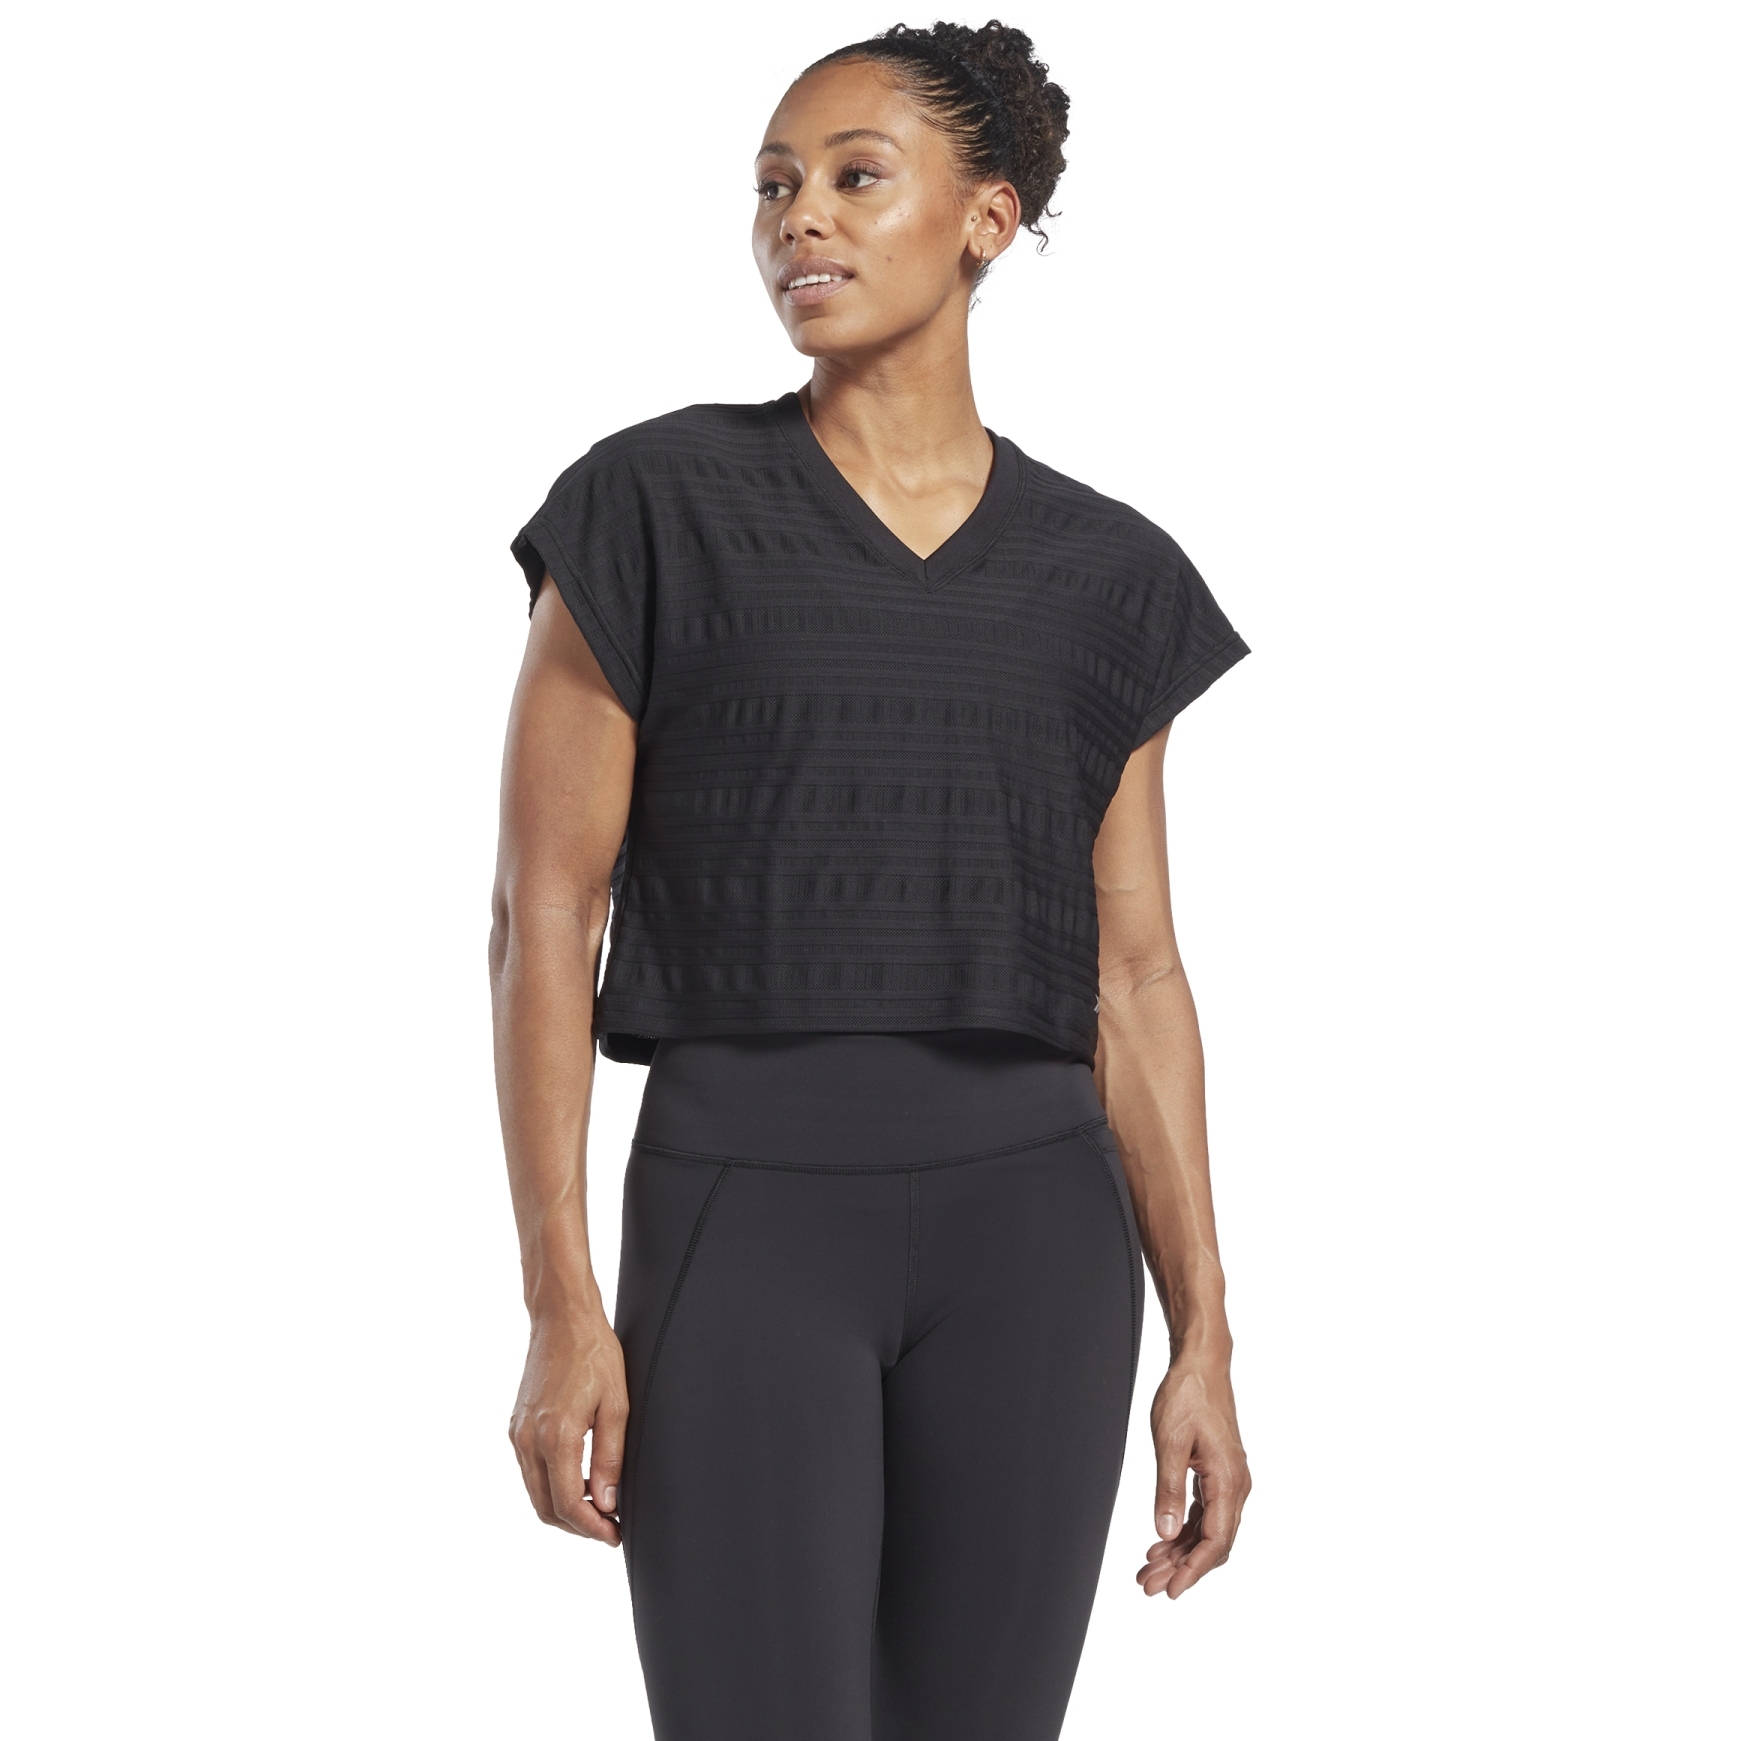 Produktbild von Reebok Perforated T-Shirt Damen - schwarz